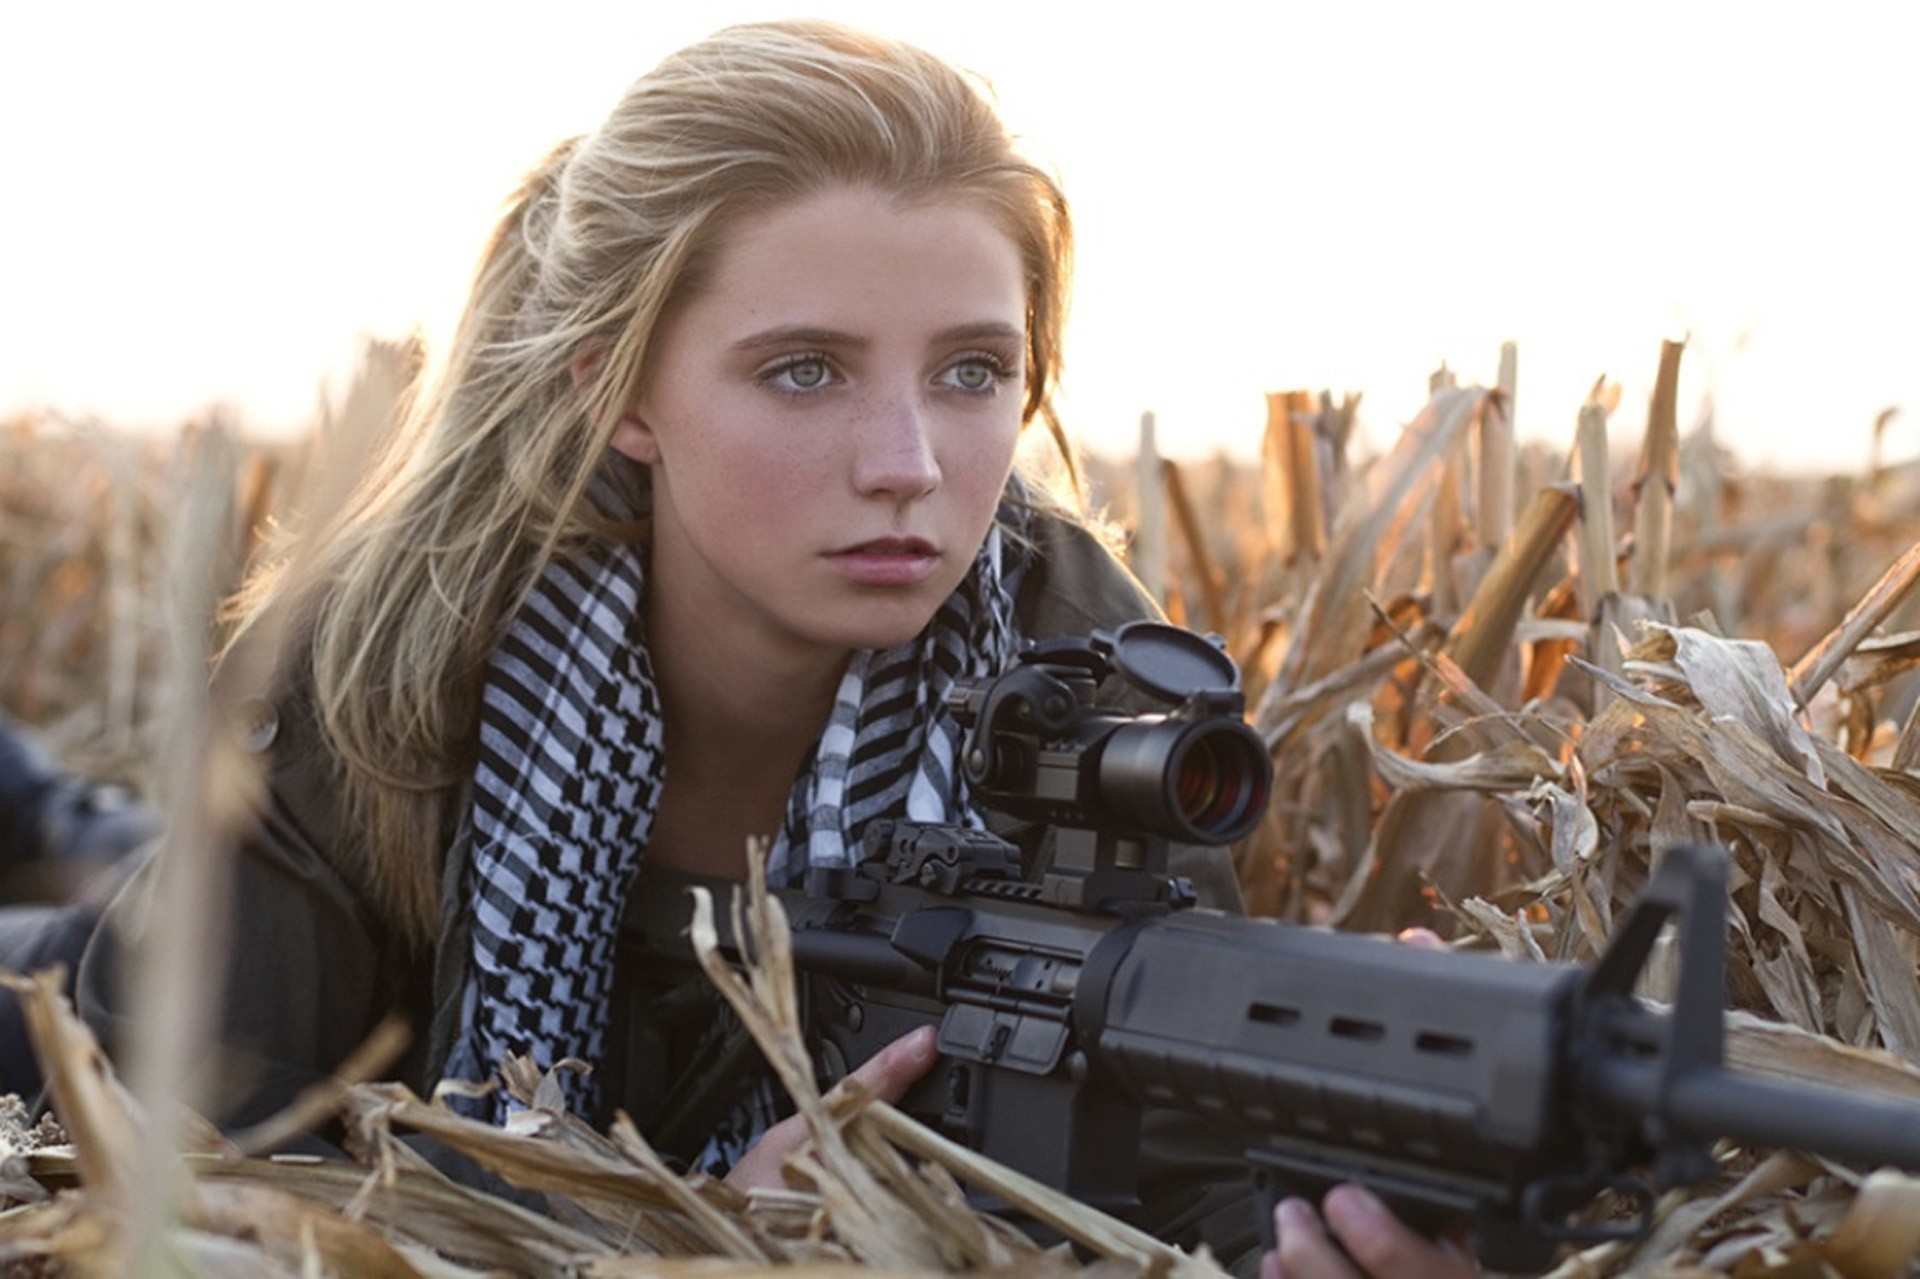 Wallpaper Blondes Women Guns Fields Outdoors Girls With